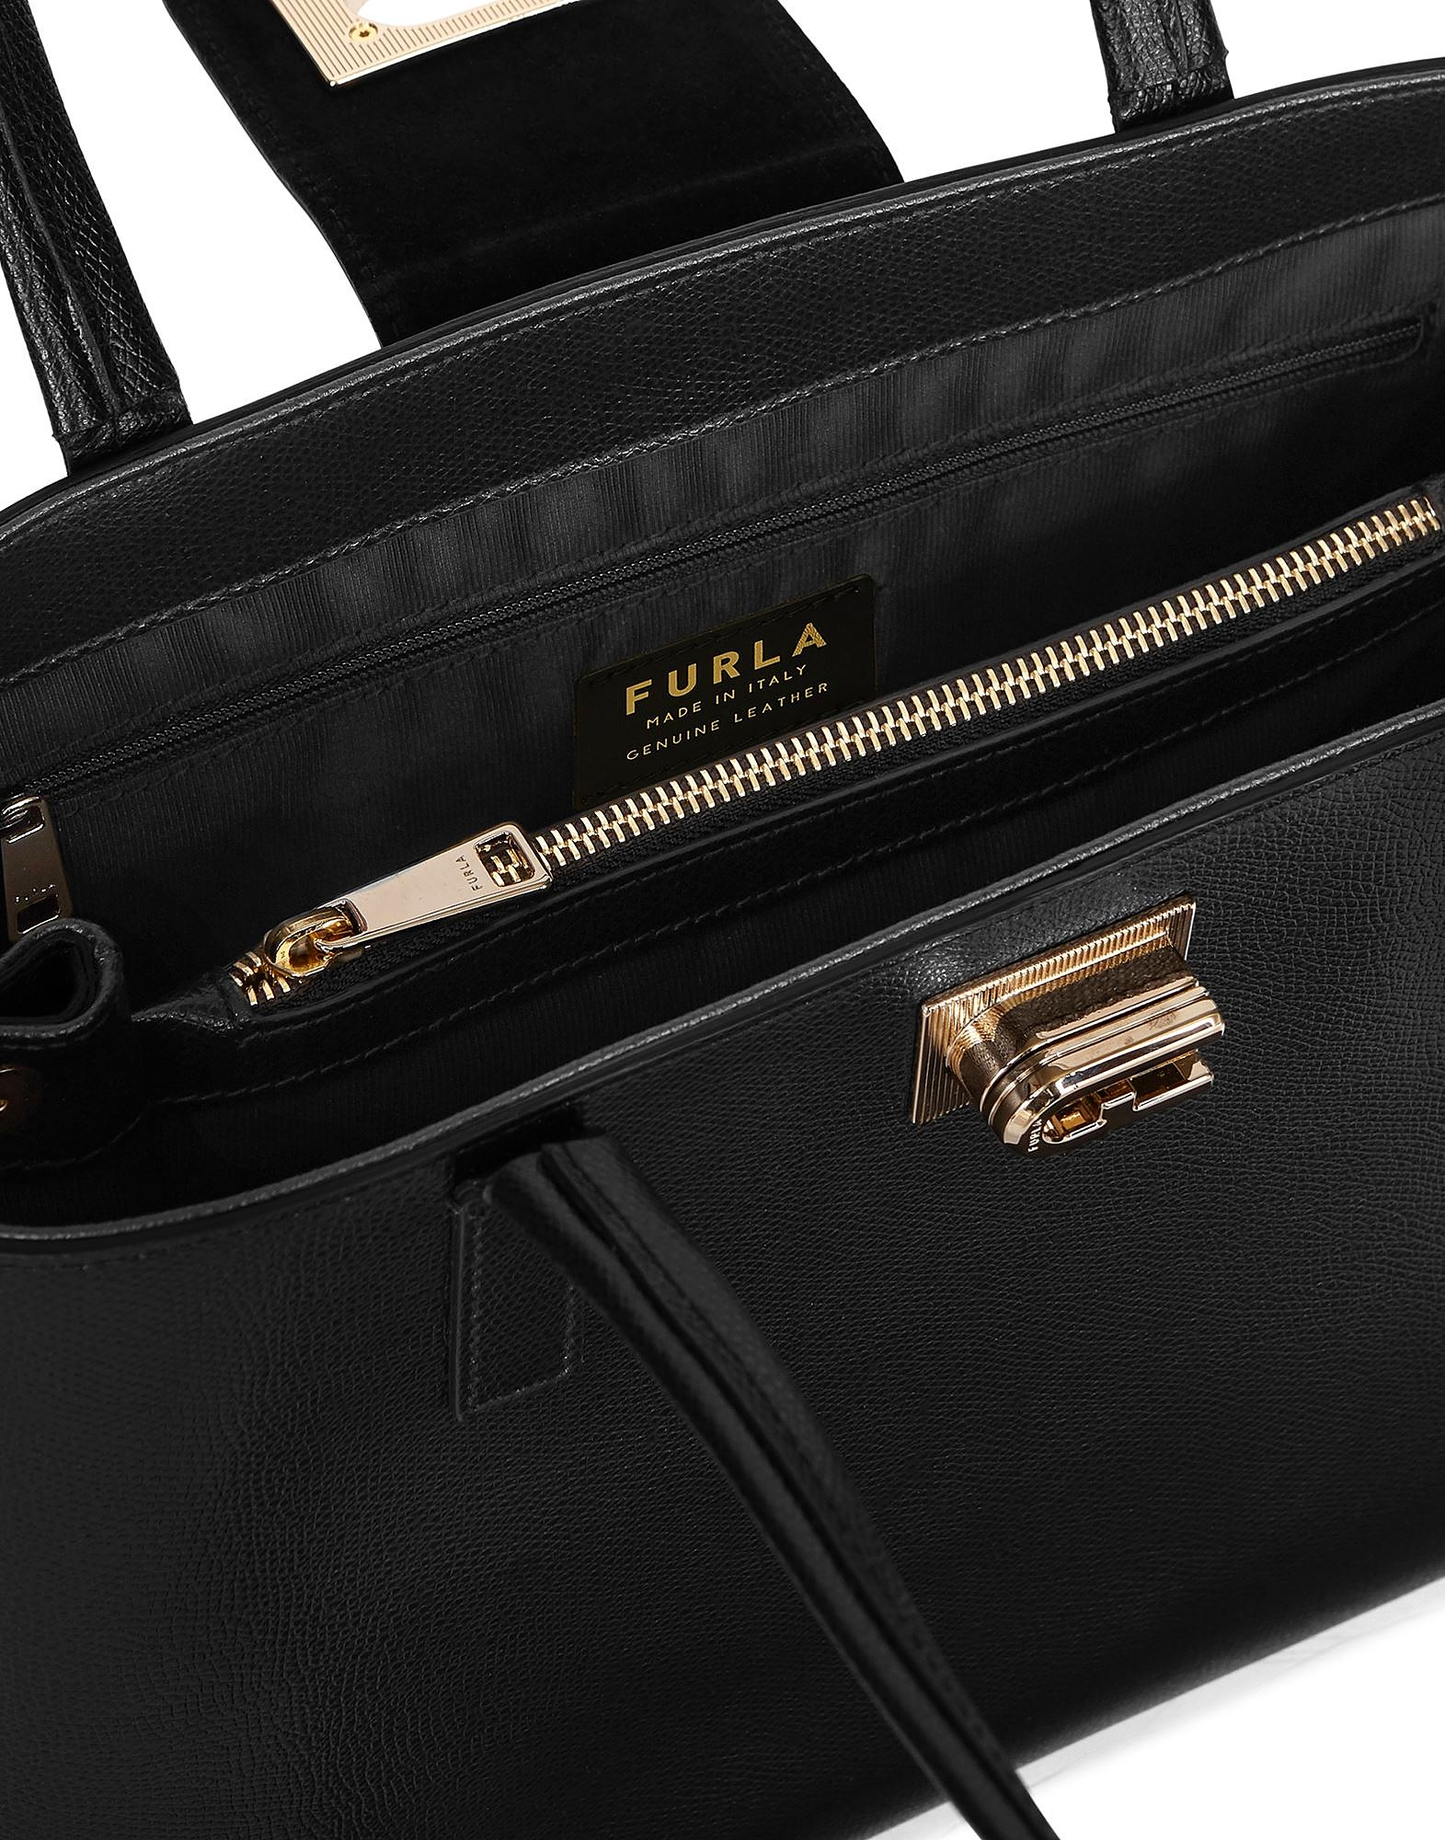 PARIOLI BAGS - Discount Designer Handbags Outlet |-FURLA FURLA 1927 L TOTE